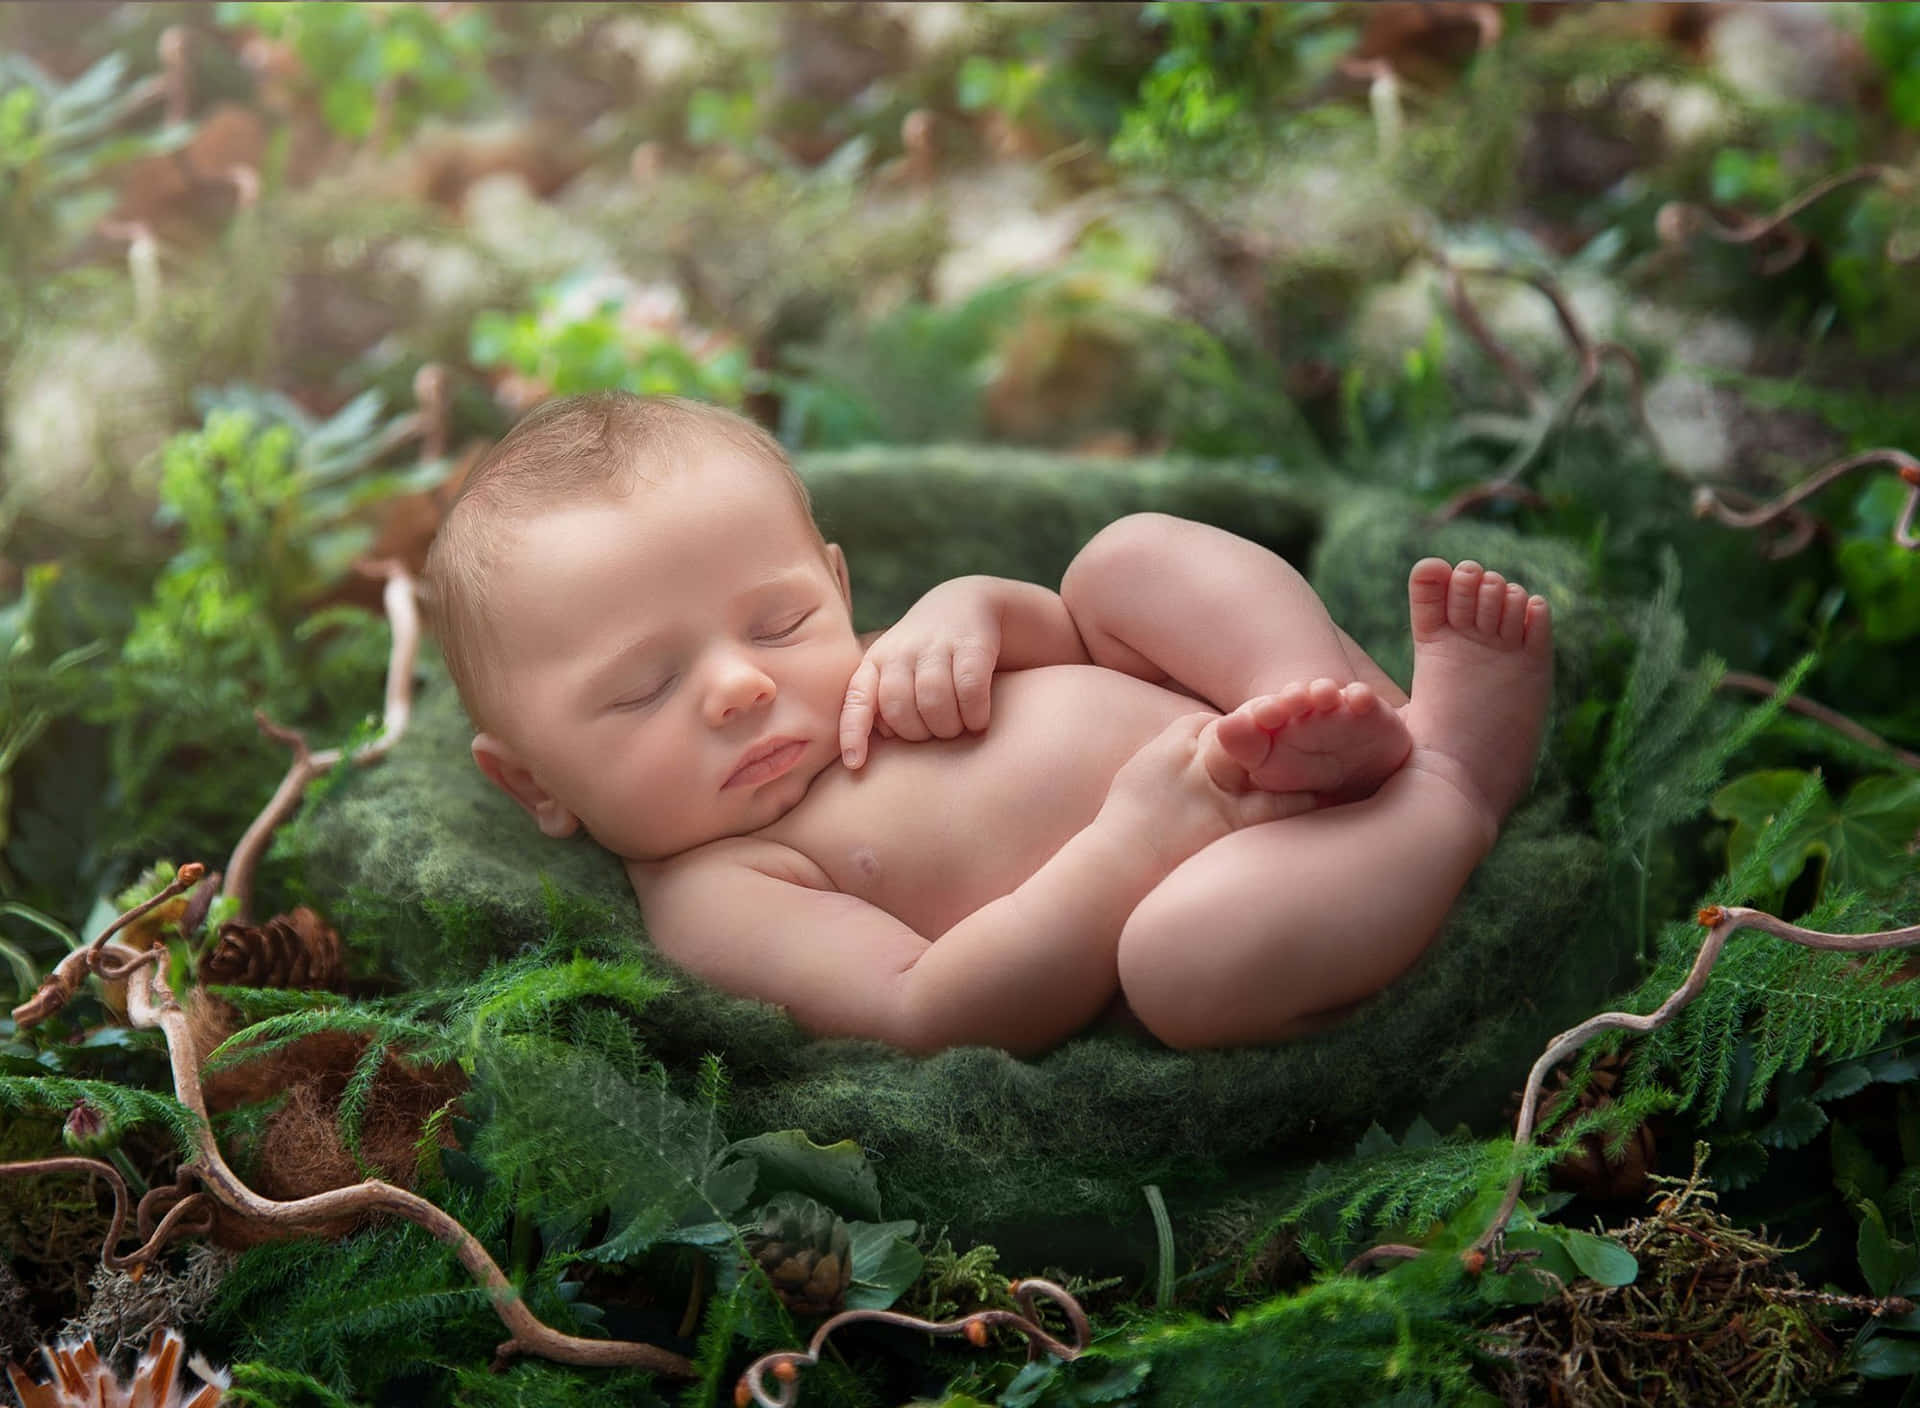 Et billede af en nyfødt dreng i junglen.